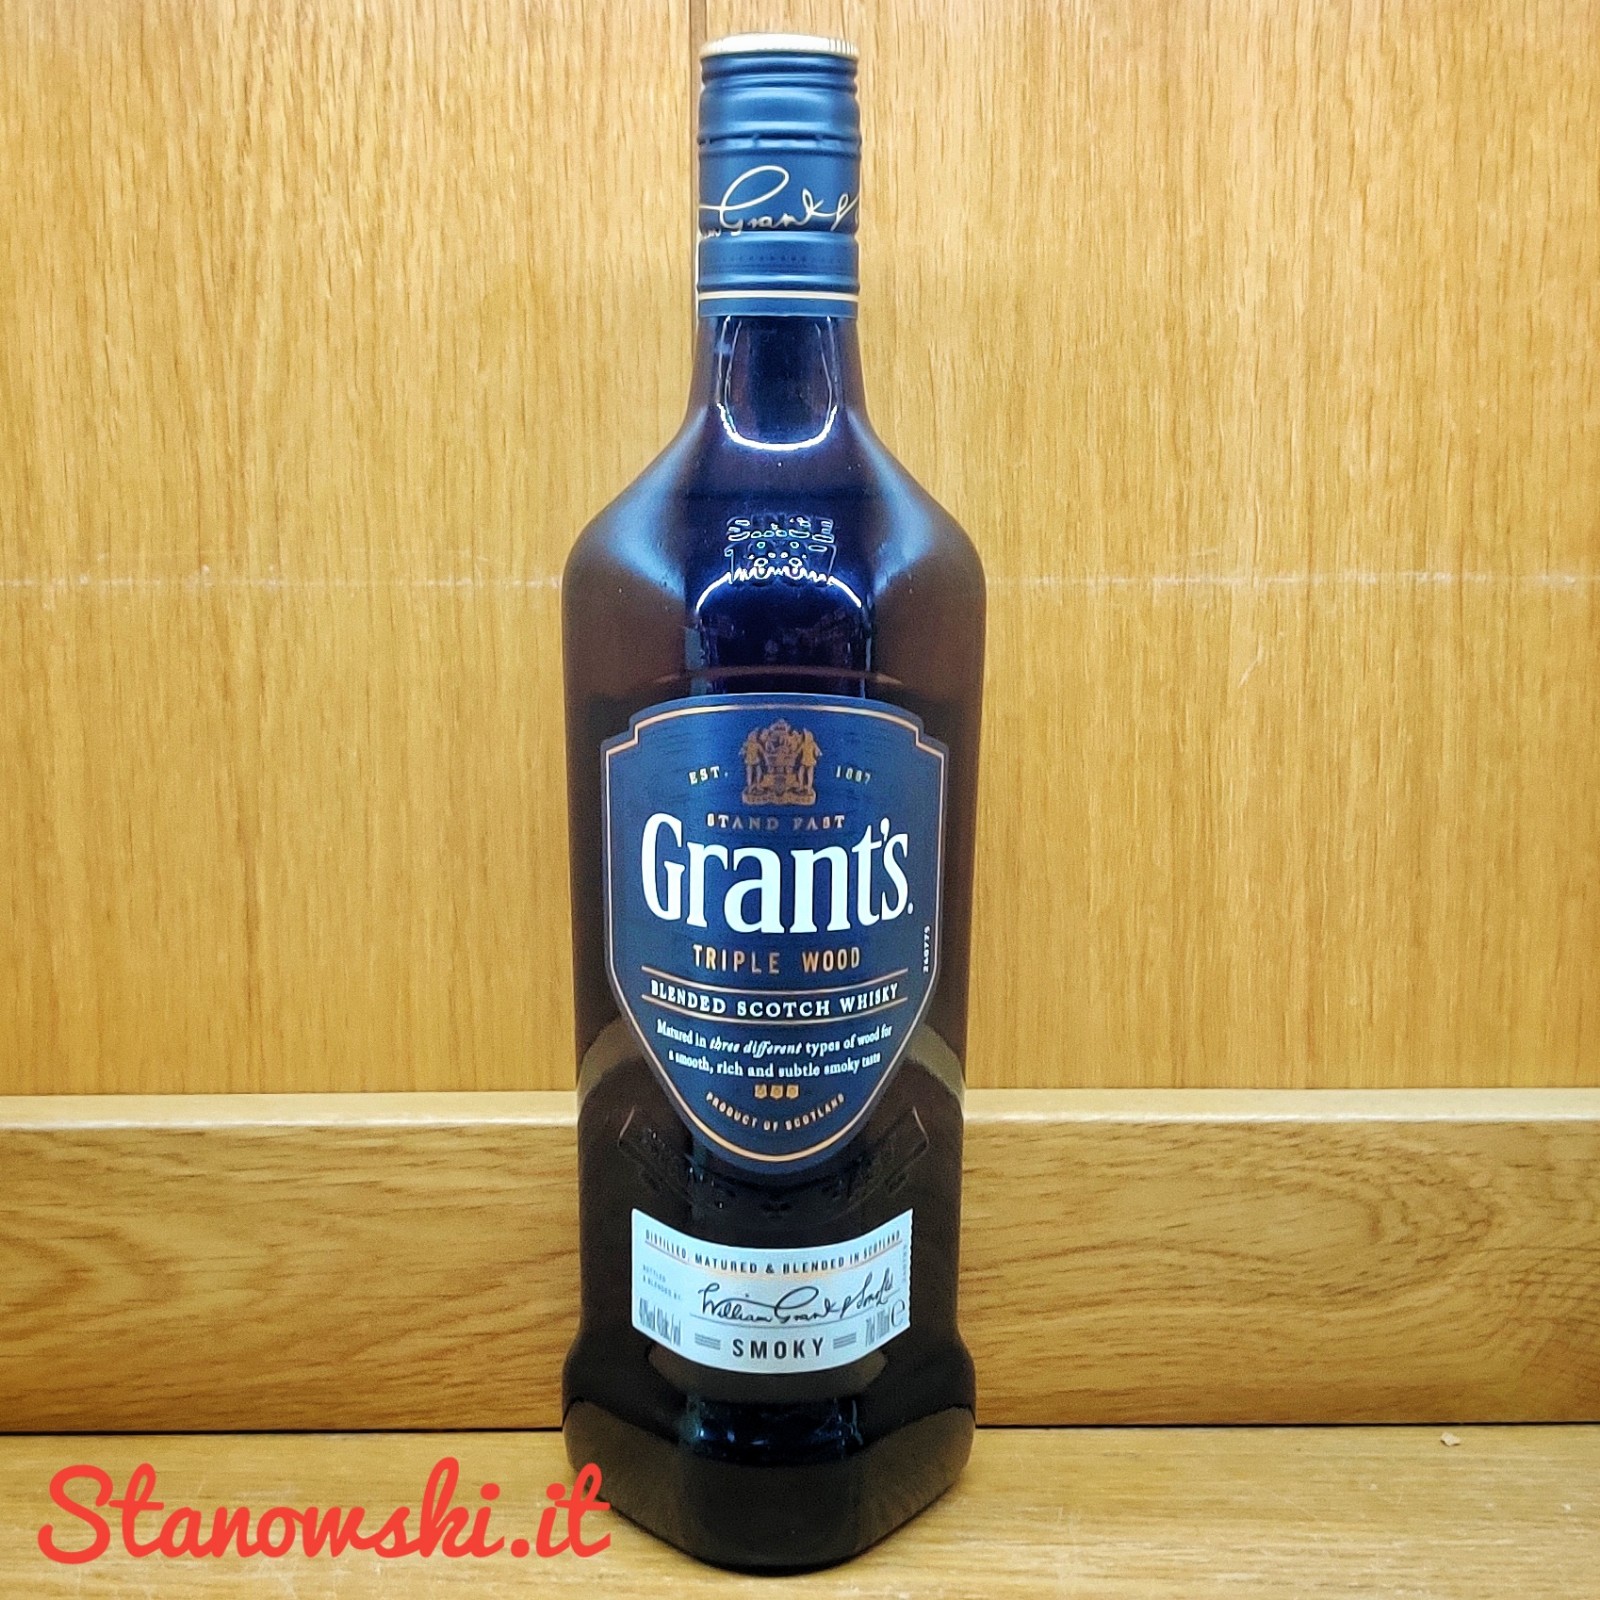 Grant’s Smoky Whisky